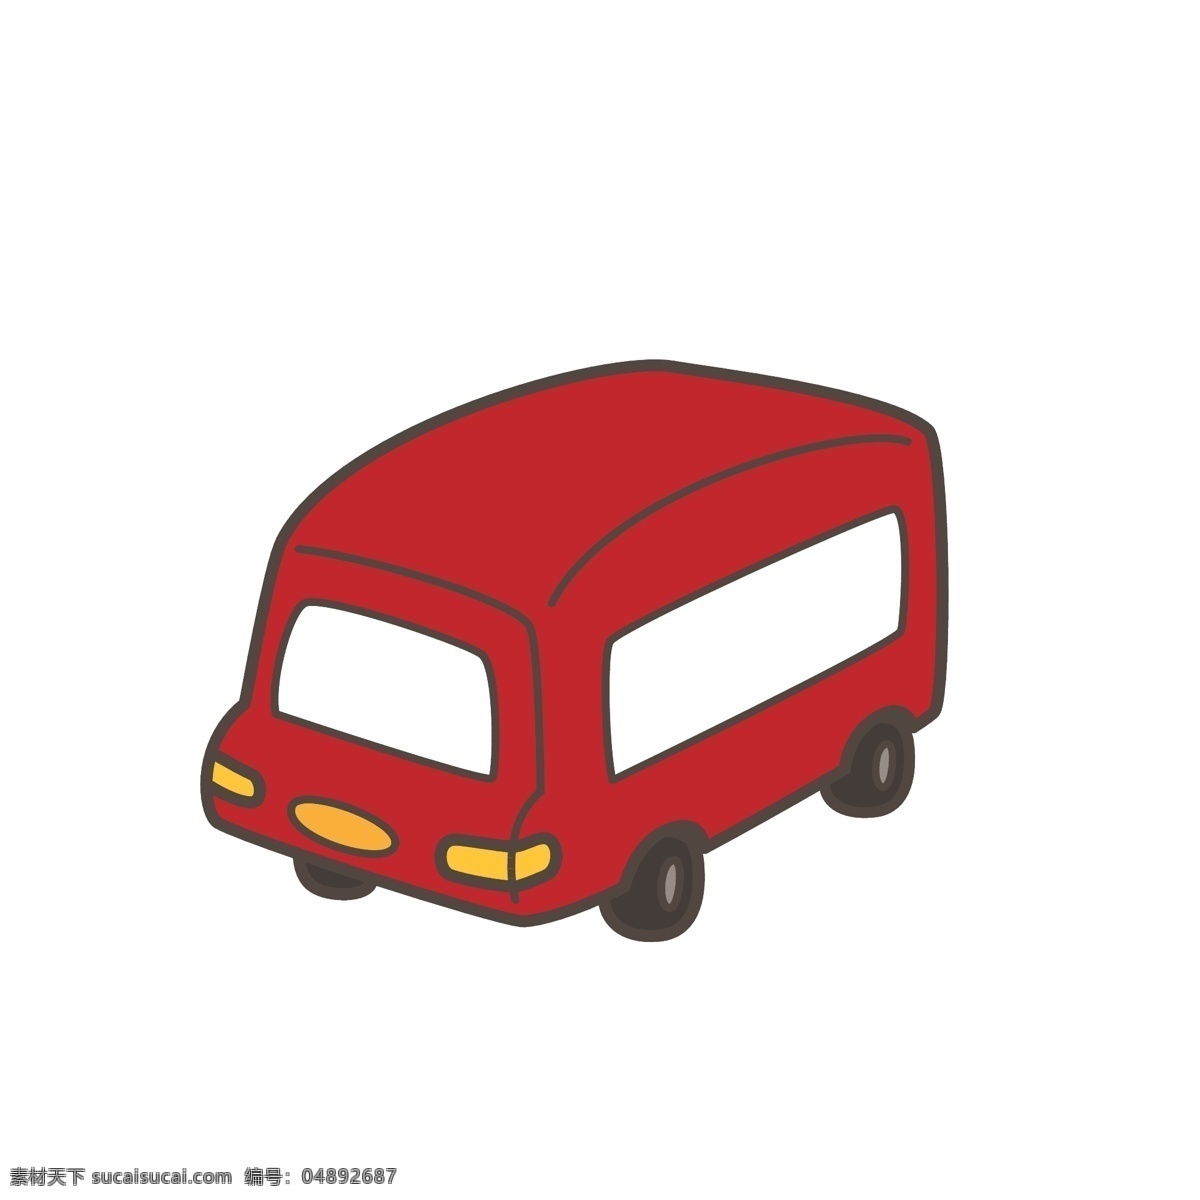 矢量 可爱 卡通 风格 玩具 巴士 车 玩具车